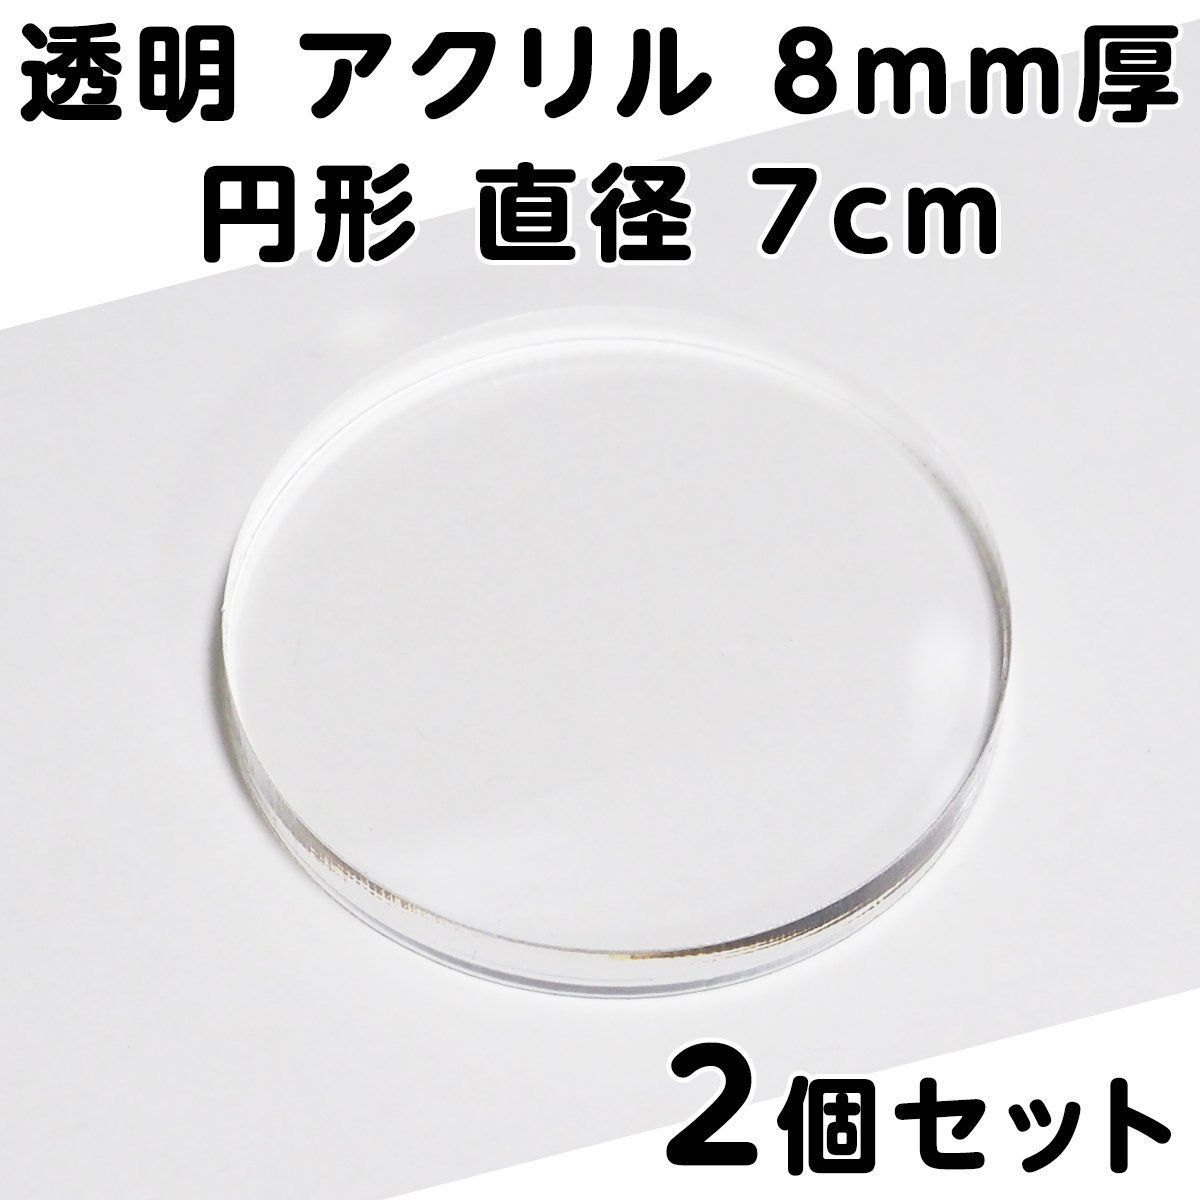 透明 アクリル 3mm厚 円形 直径 7cm 10個セット